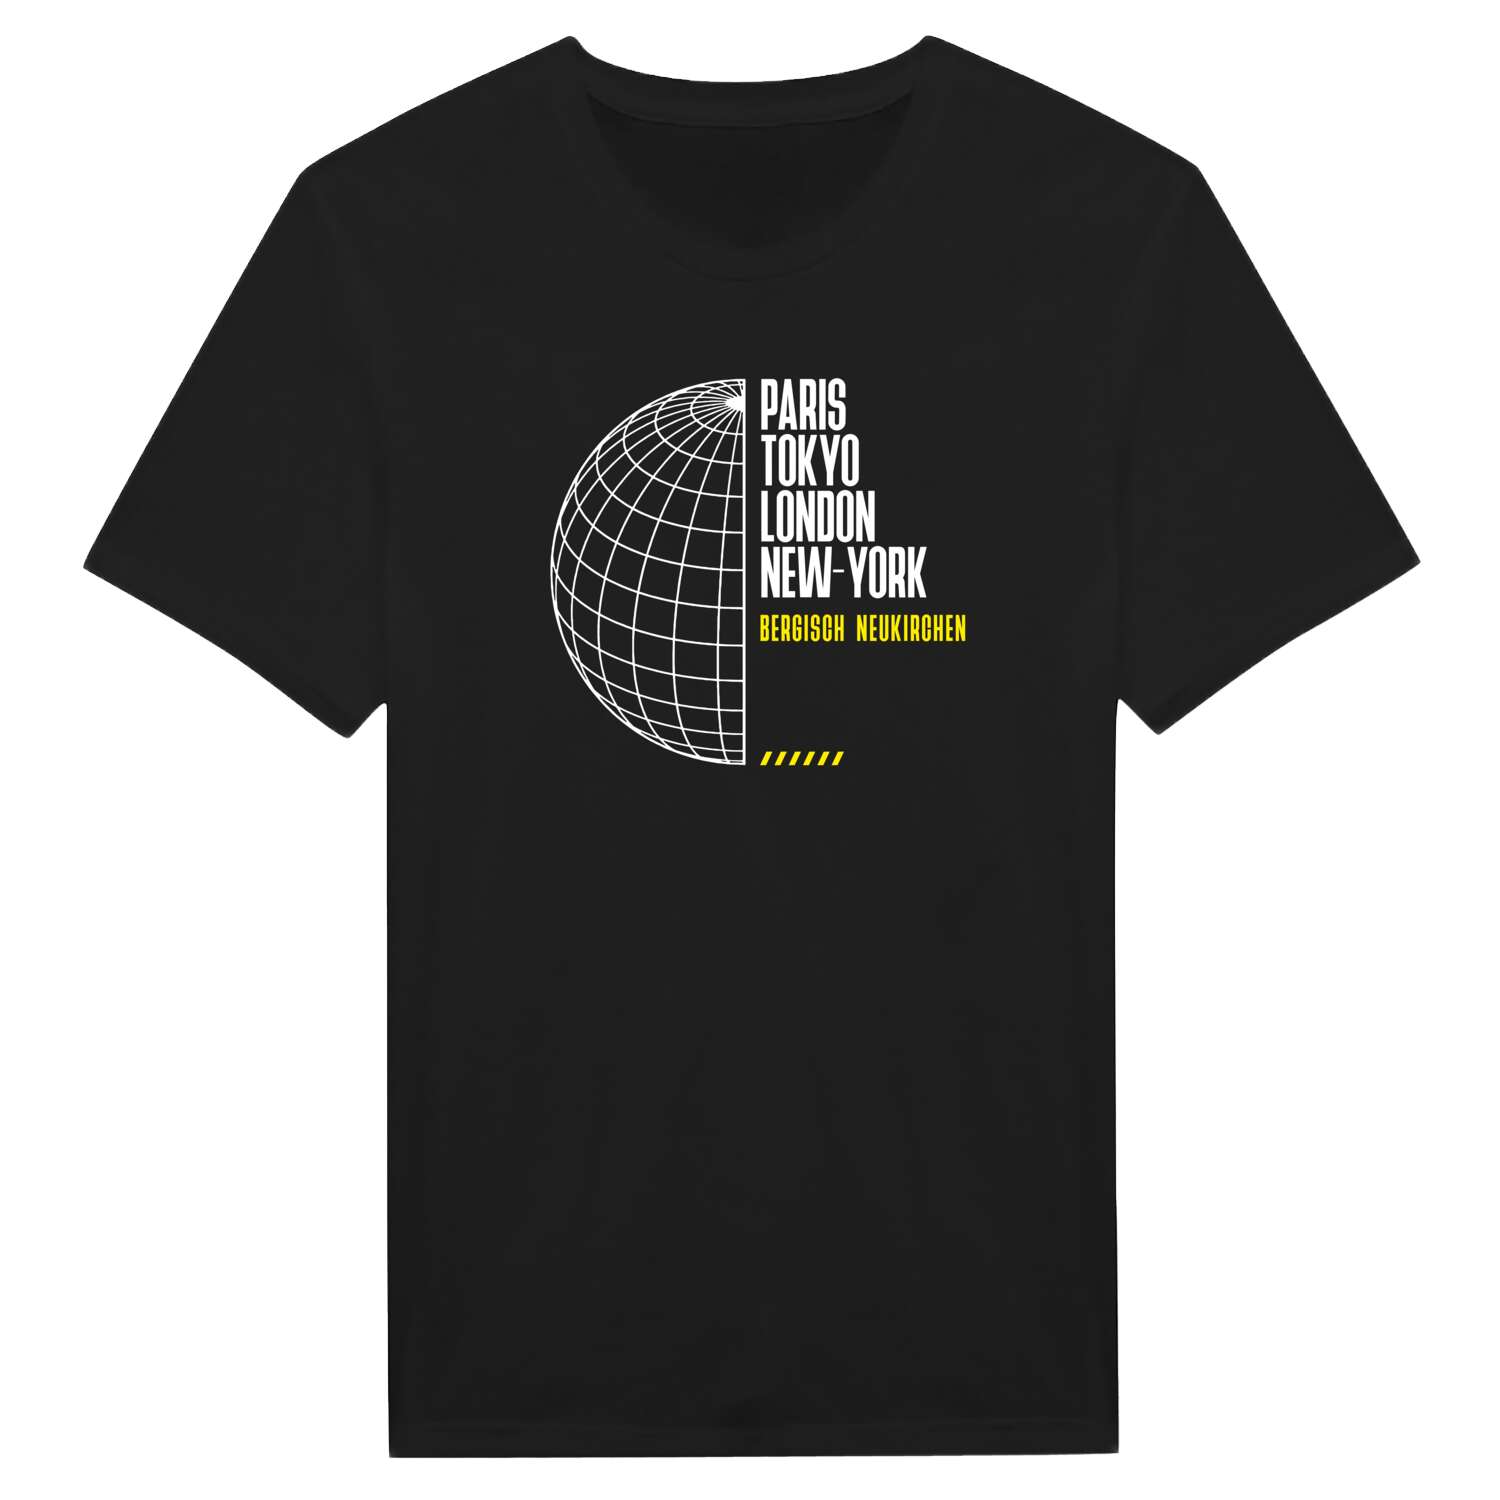 Bergisch Neukirchen T-Shirt »Paris Tokyo London«